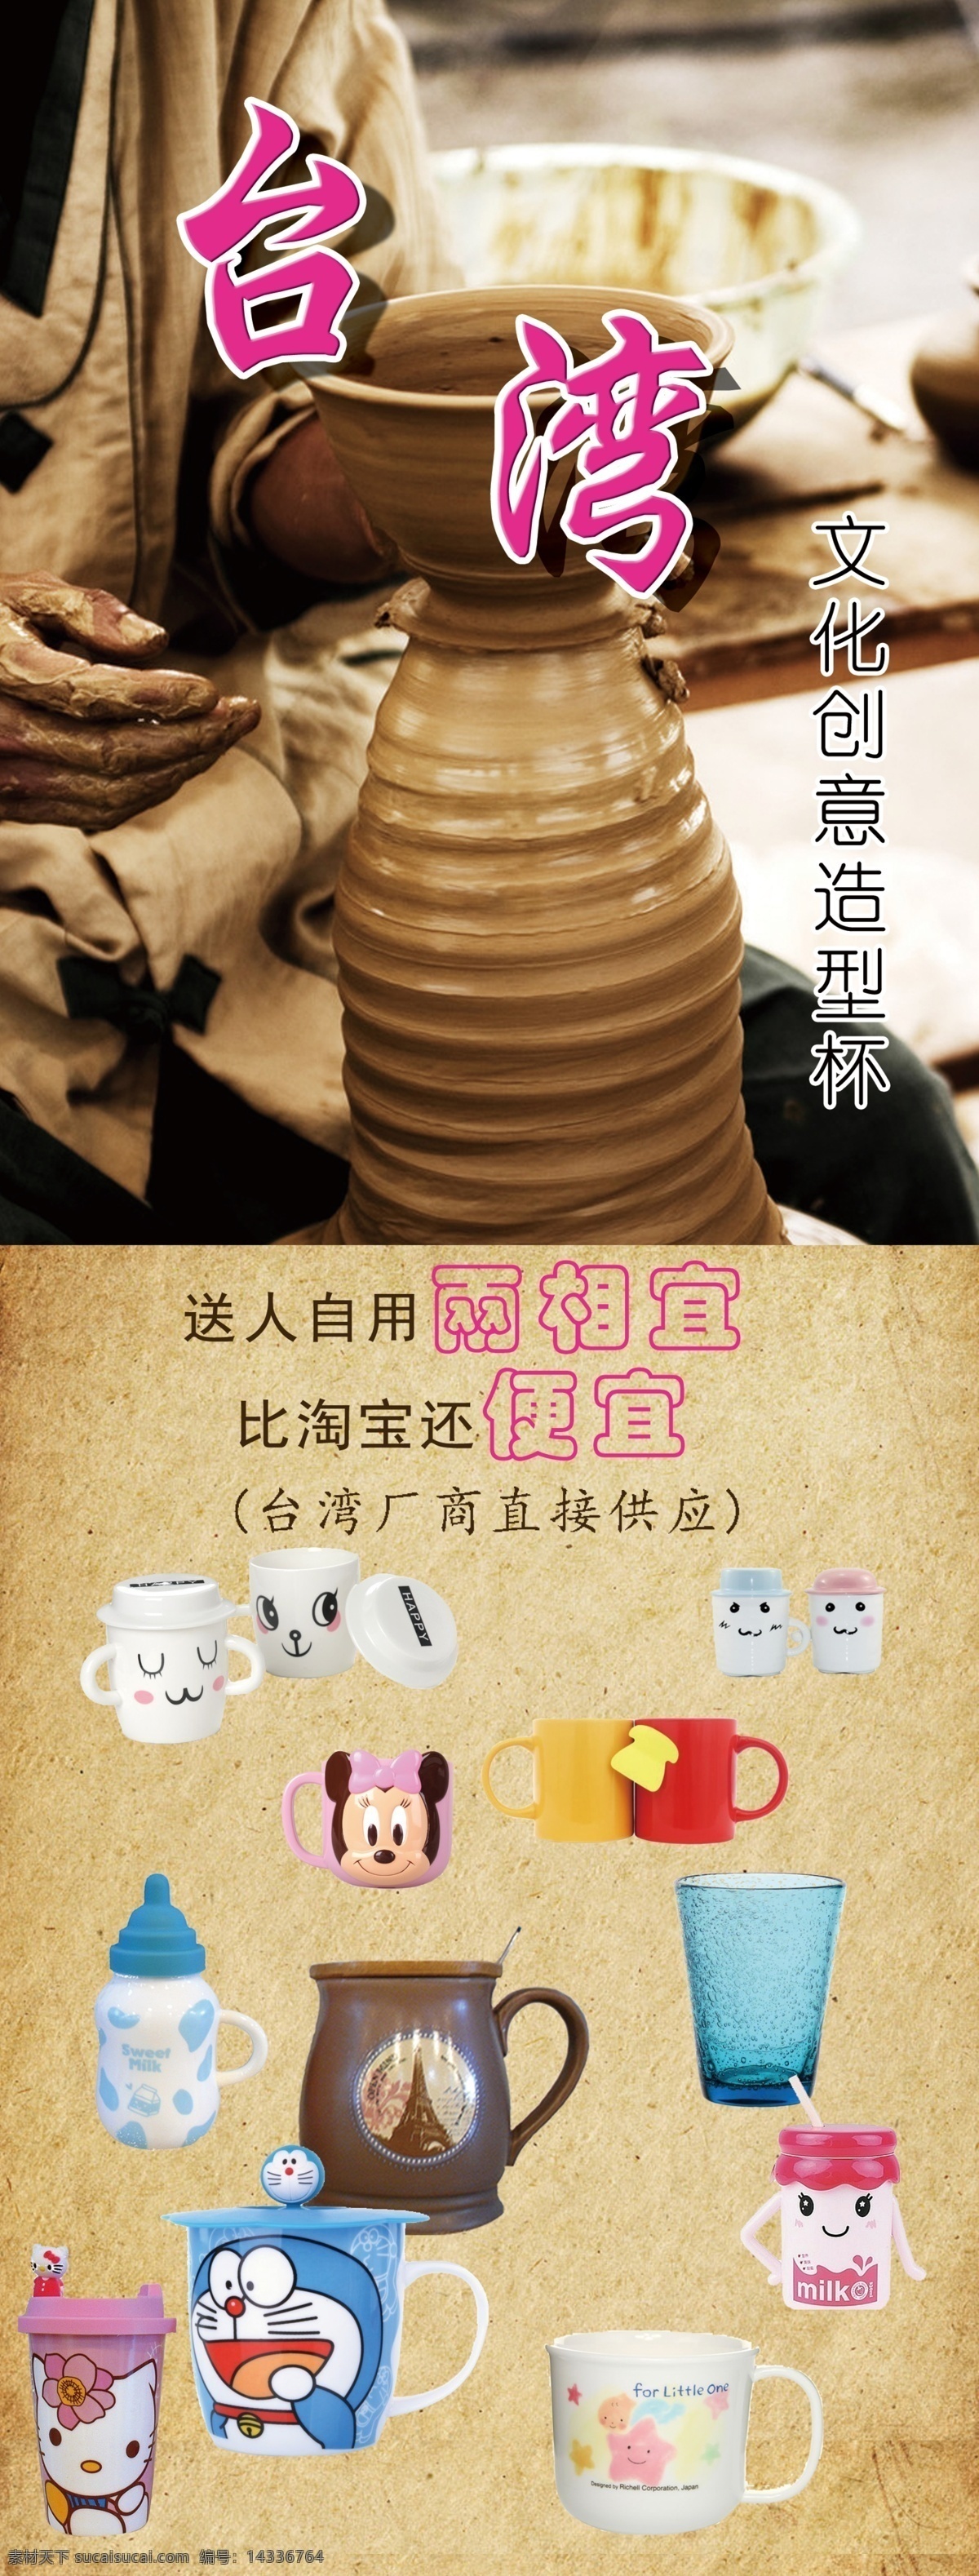 台湾 文化 创意 造型 手工 杯 x 展板 杯子 杯子素材 送人自用 厂家供应 原创设计 原创展板